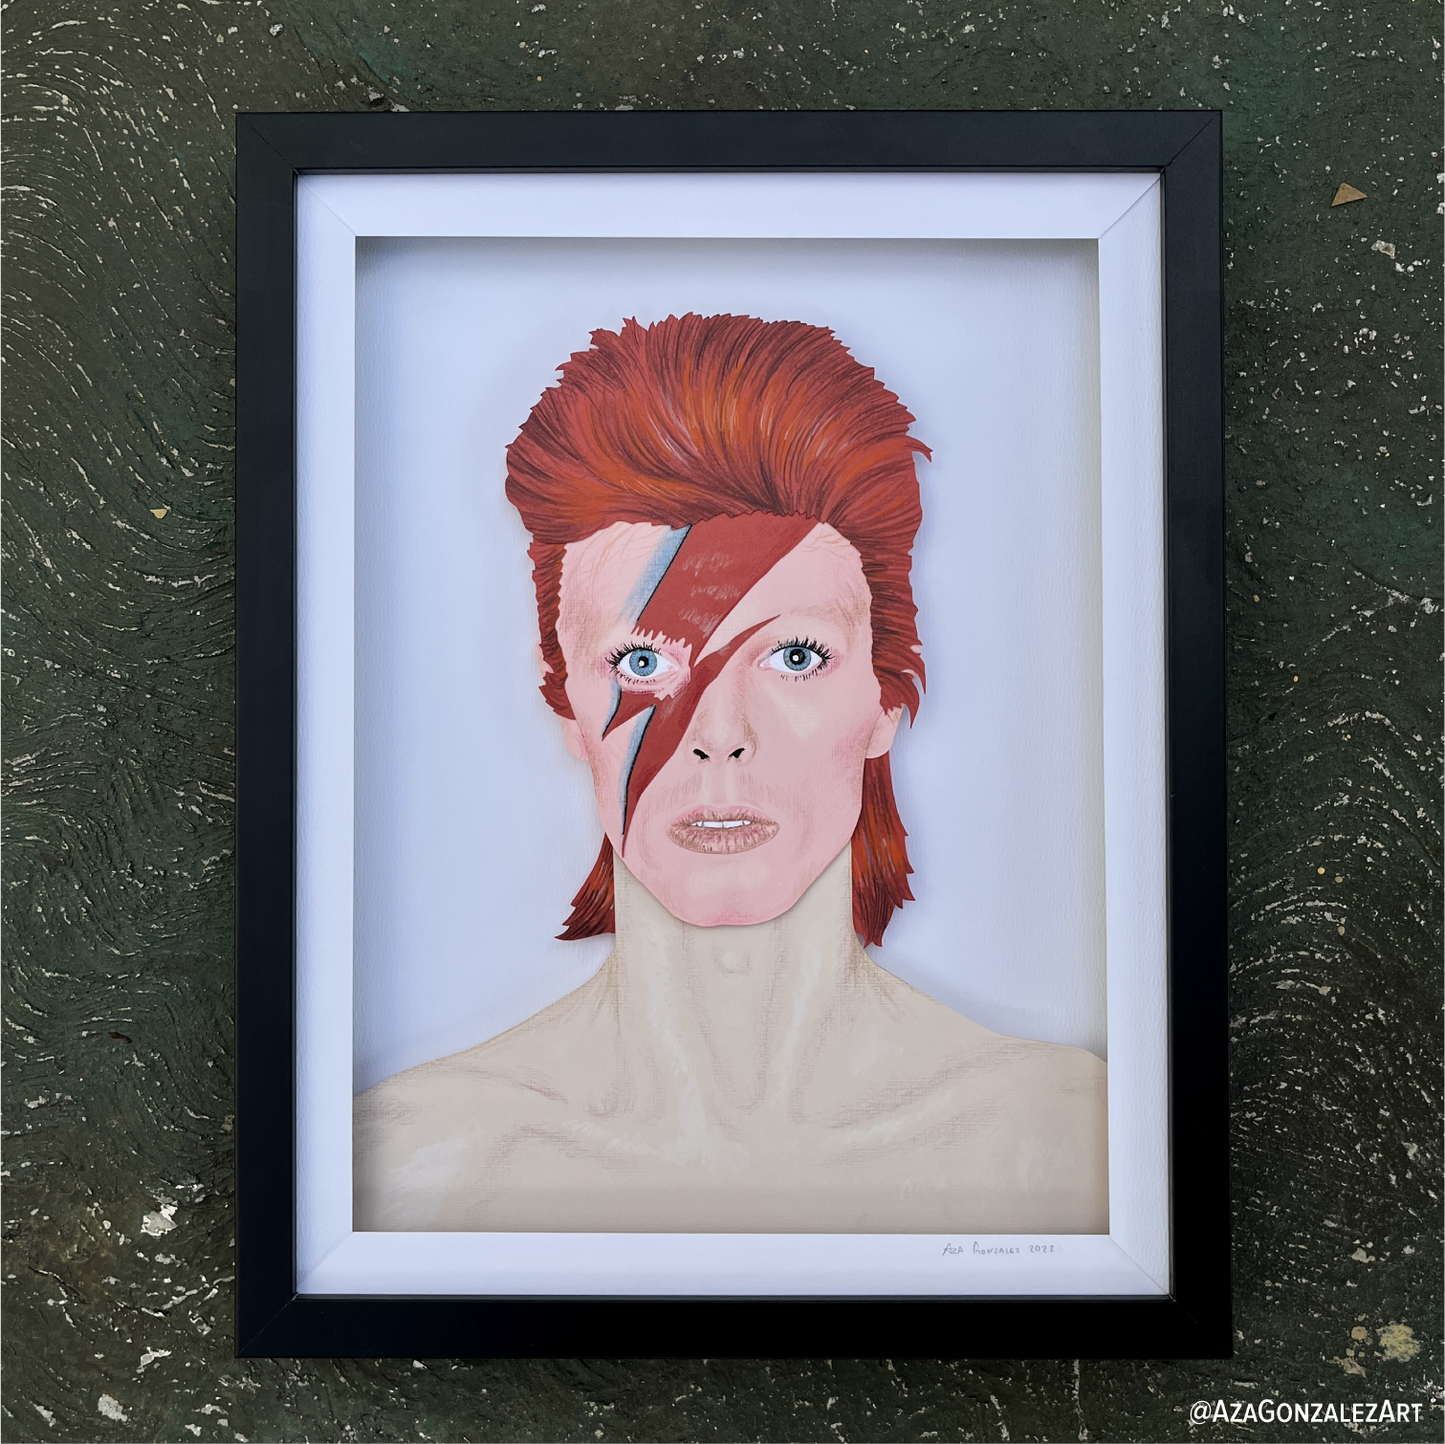 David Bowie Portrait